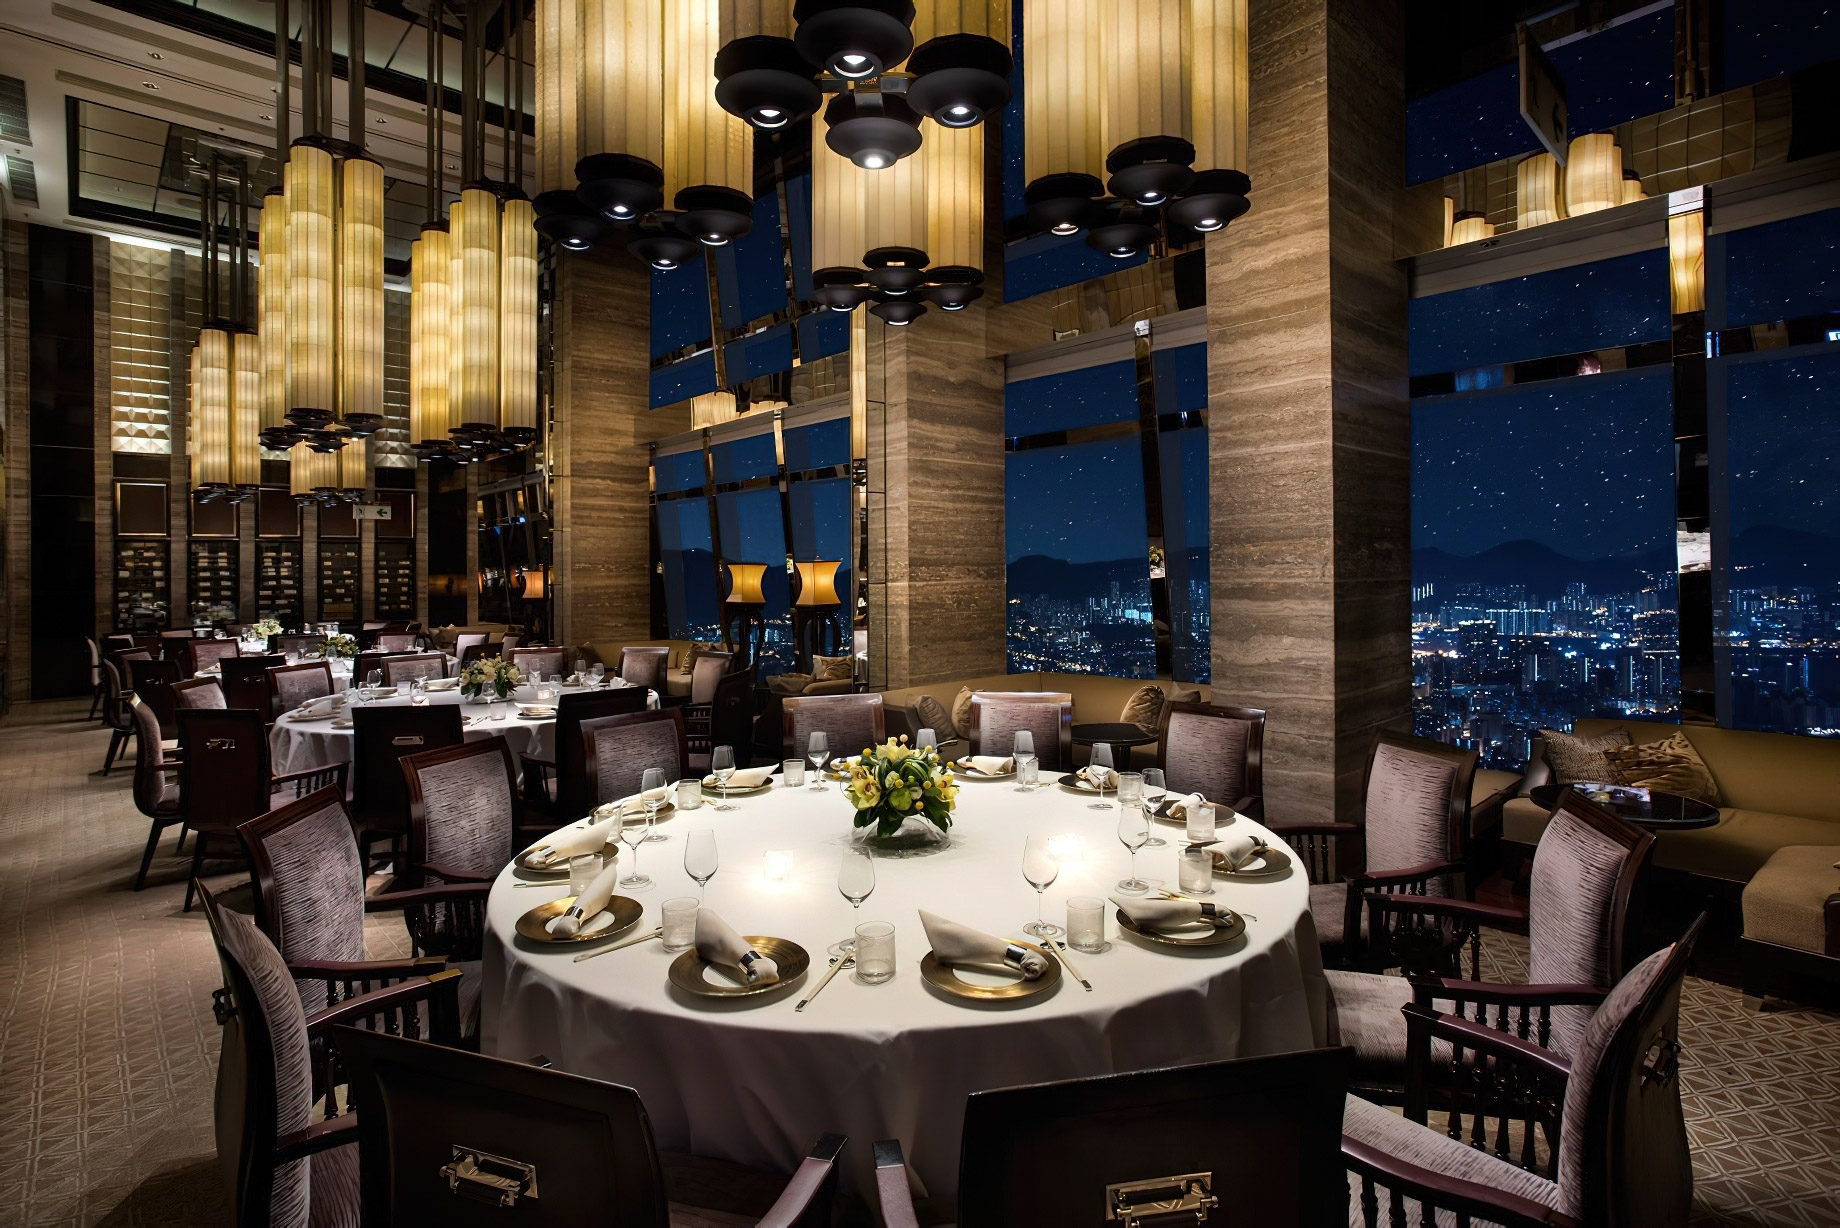 The Ritz-Carlton, Hong Kong Hotel - West Kowloon, Hong Kong - 102nd Floor Tin Lung Heen Restaurant